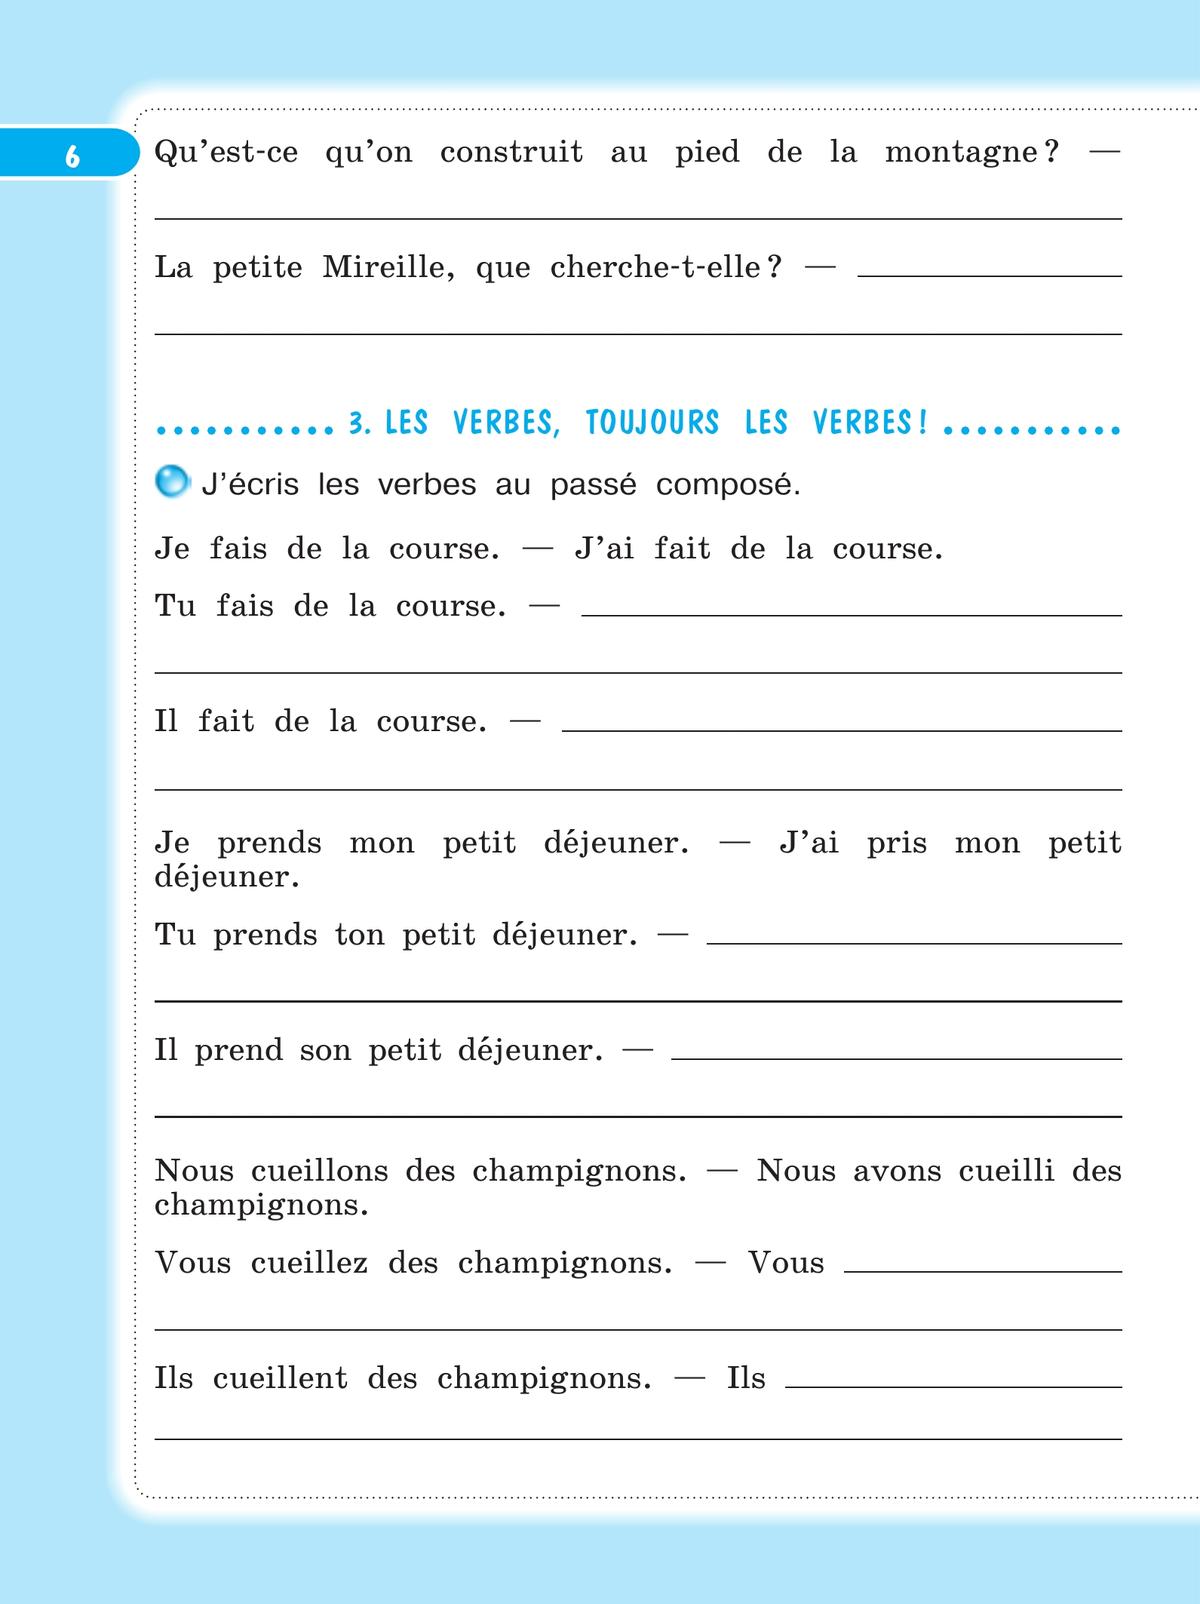 Французский язык. Рабочая тетрадь. 4 класс 11